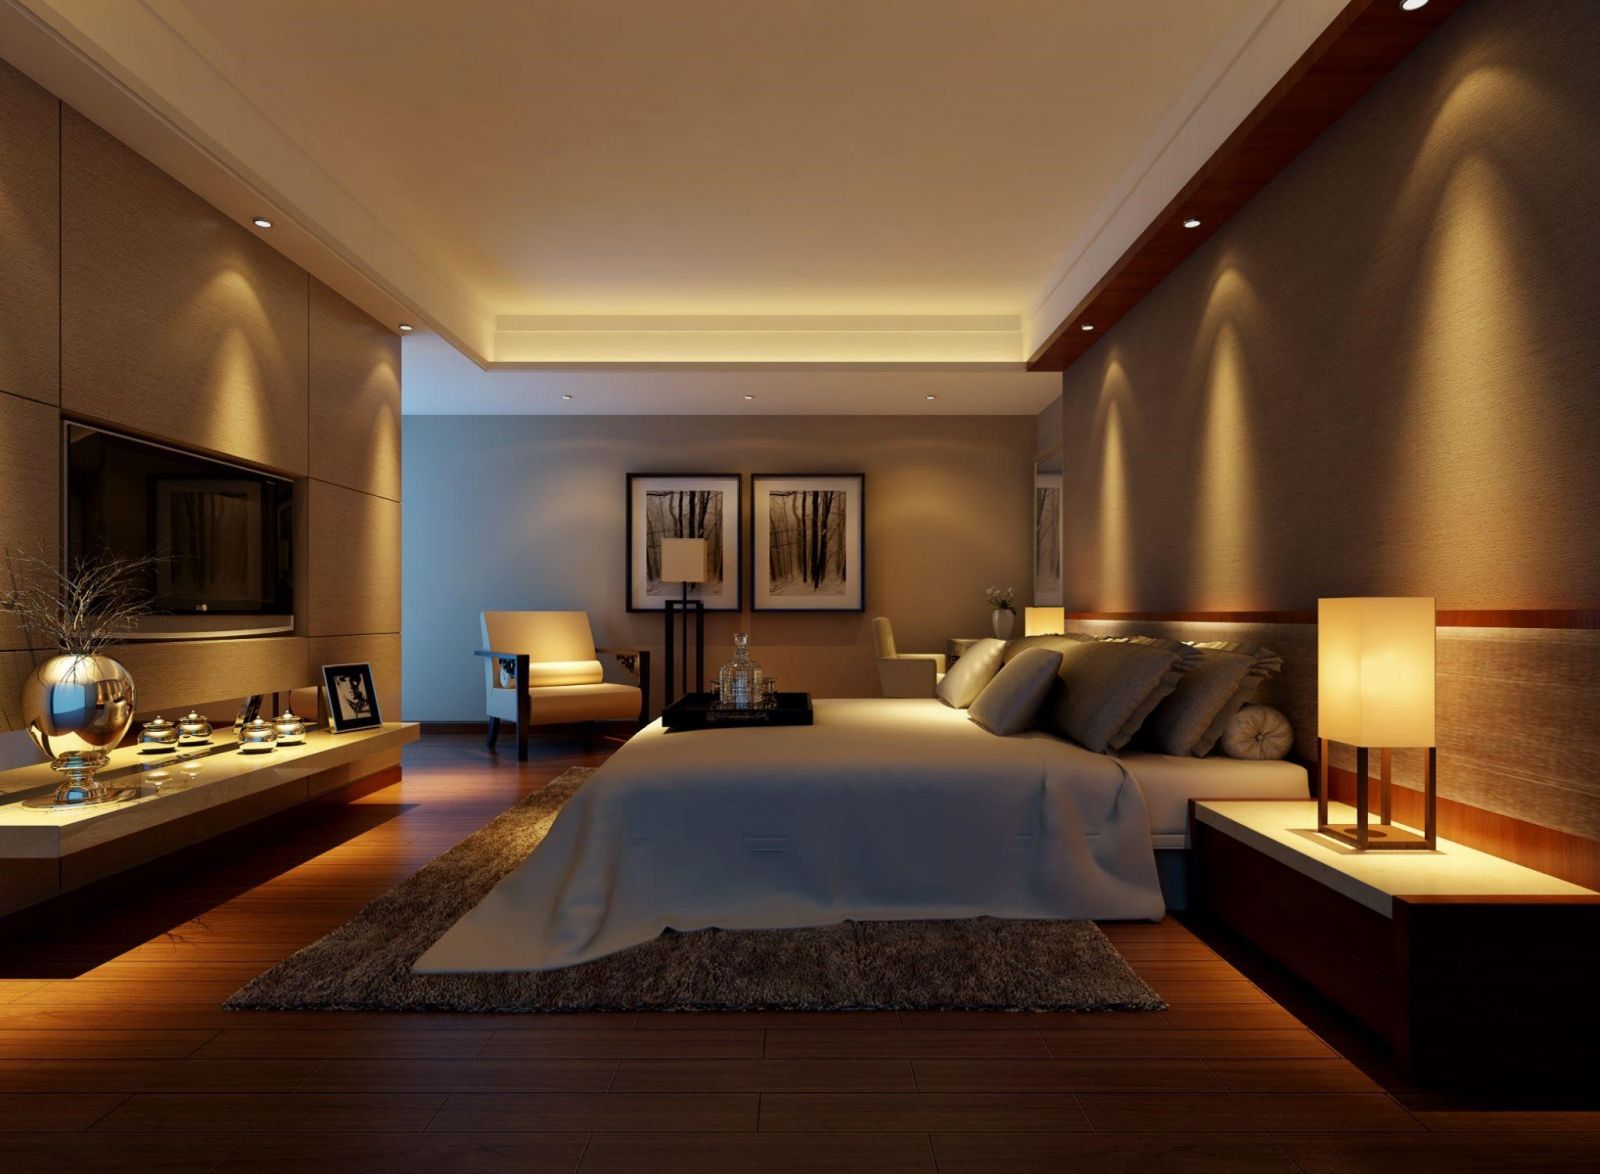 Trần thạch cao phòng ngủ - nơi nghỉ ngơi đáng yêu và tuyệt đẹp. Không chỉ là một vật liệu xây dựng chuyên nghiệp, trần thạch cao còn mang đến cảm giác ấm cúng cho không gian nghỉ ngơi của bạn. Hòa quyện với hệ thống đèn LED cao cấp và mức giá phù hợp, trần thạch cao phòng ngủ sẽ làm cho bạn cảm thấy thoải mái và thư giãn.